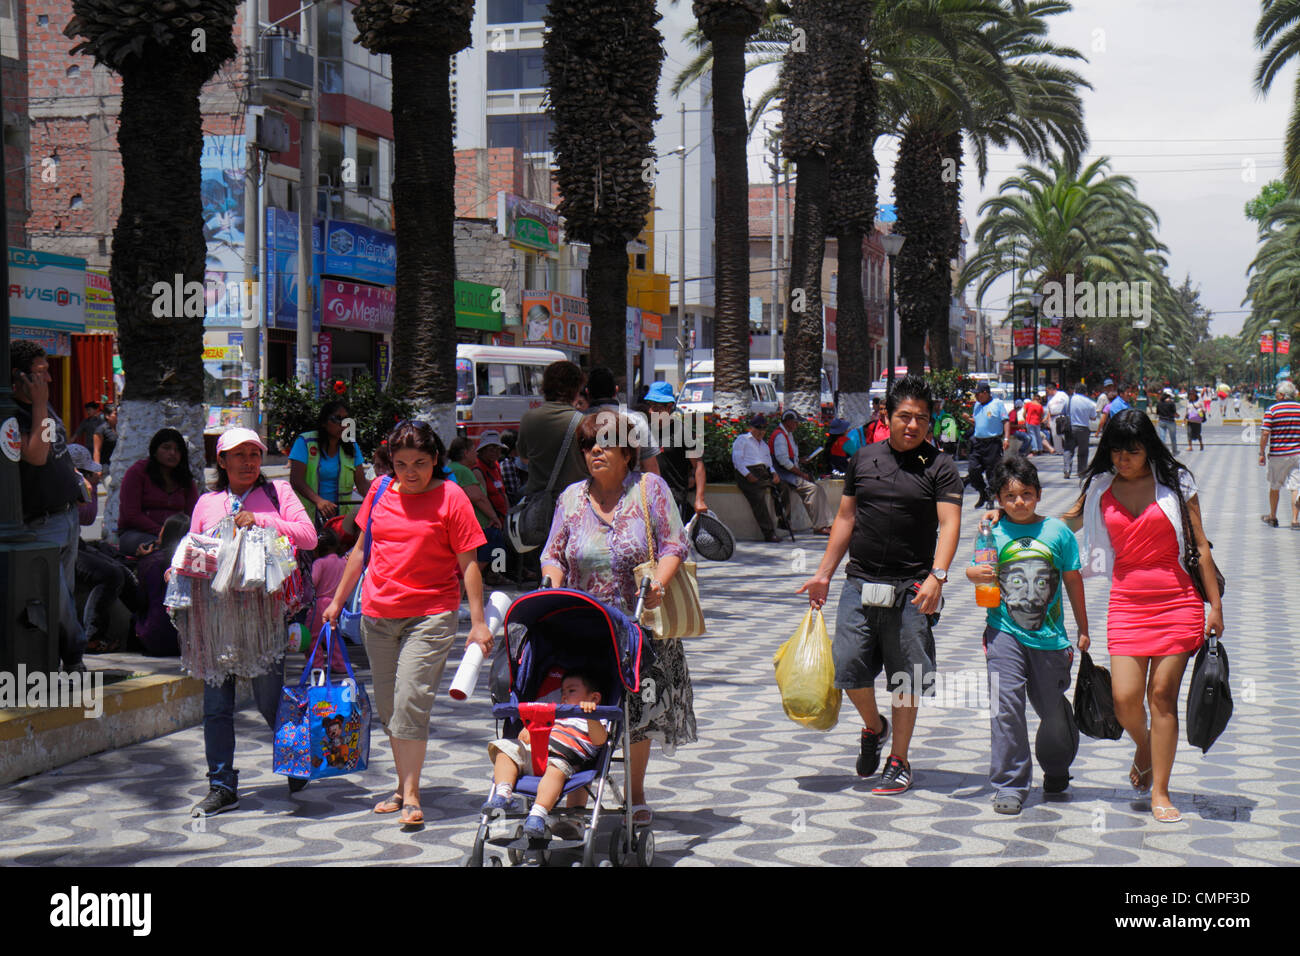 Tacna Peru,Avenida Bolognese,Parque de Locomotora,parco pubblico,passeggiata,uomo etnico ispanico uomini maschio,donna donne,baby bebè bambini,gir Foto Stock